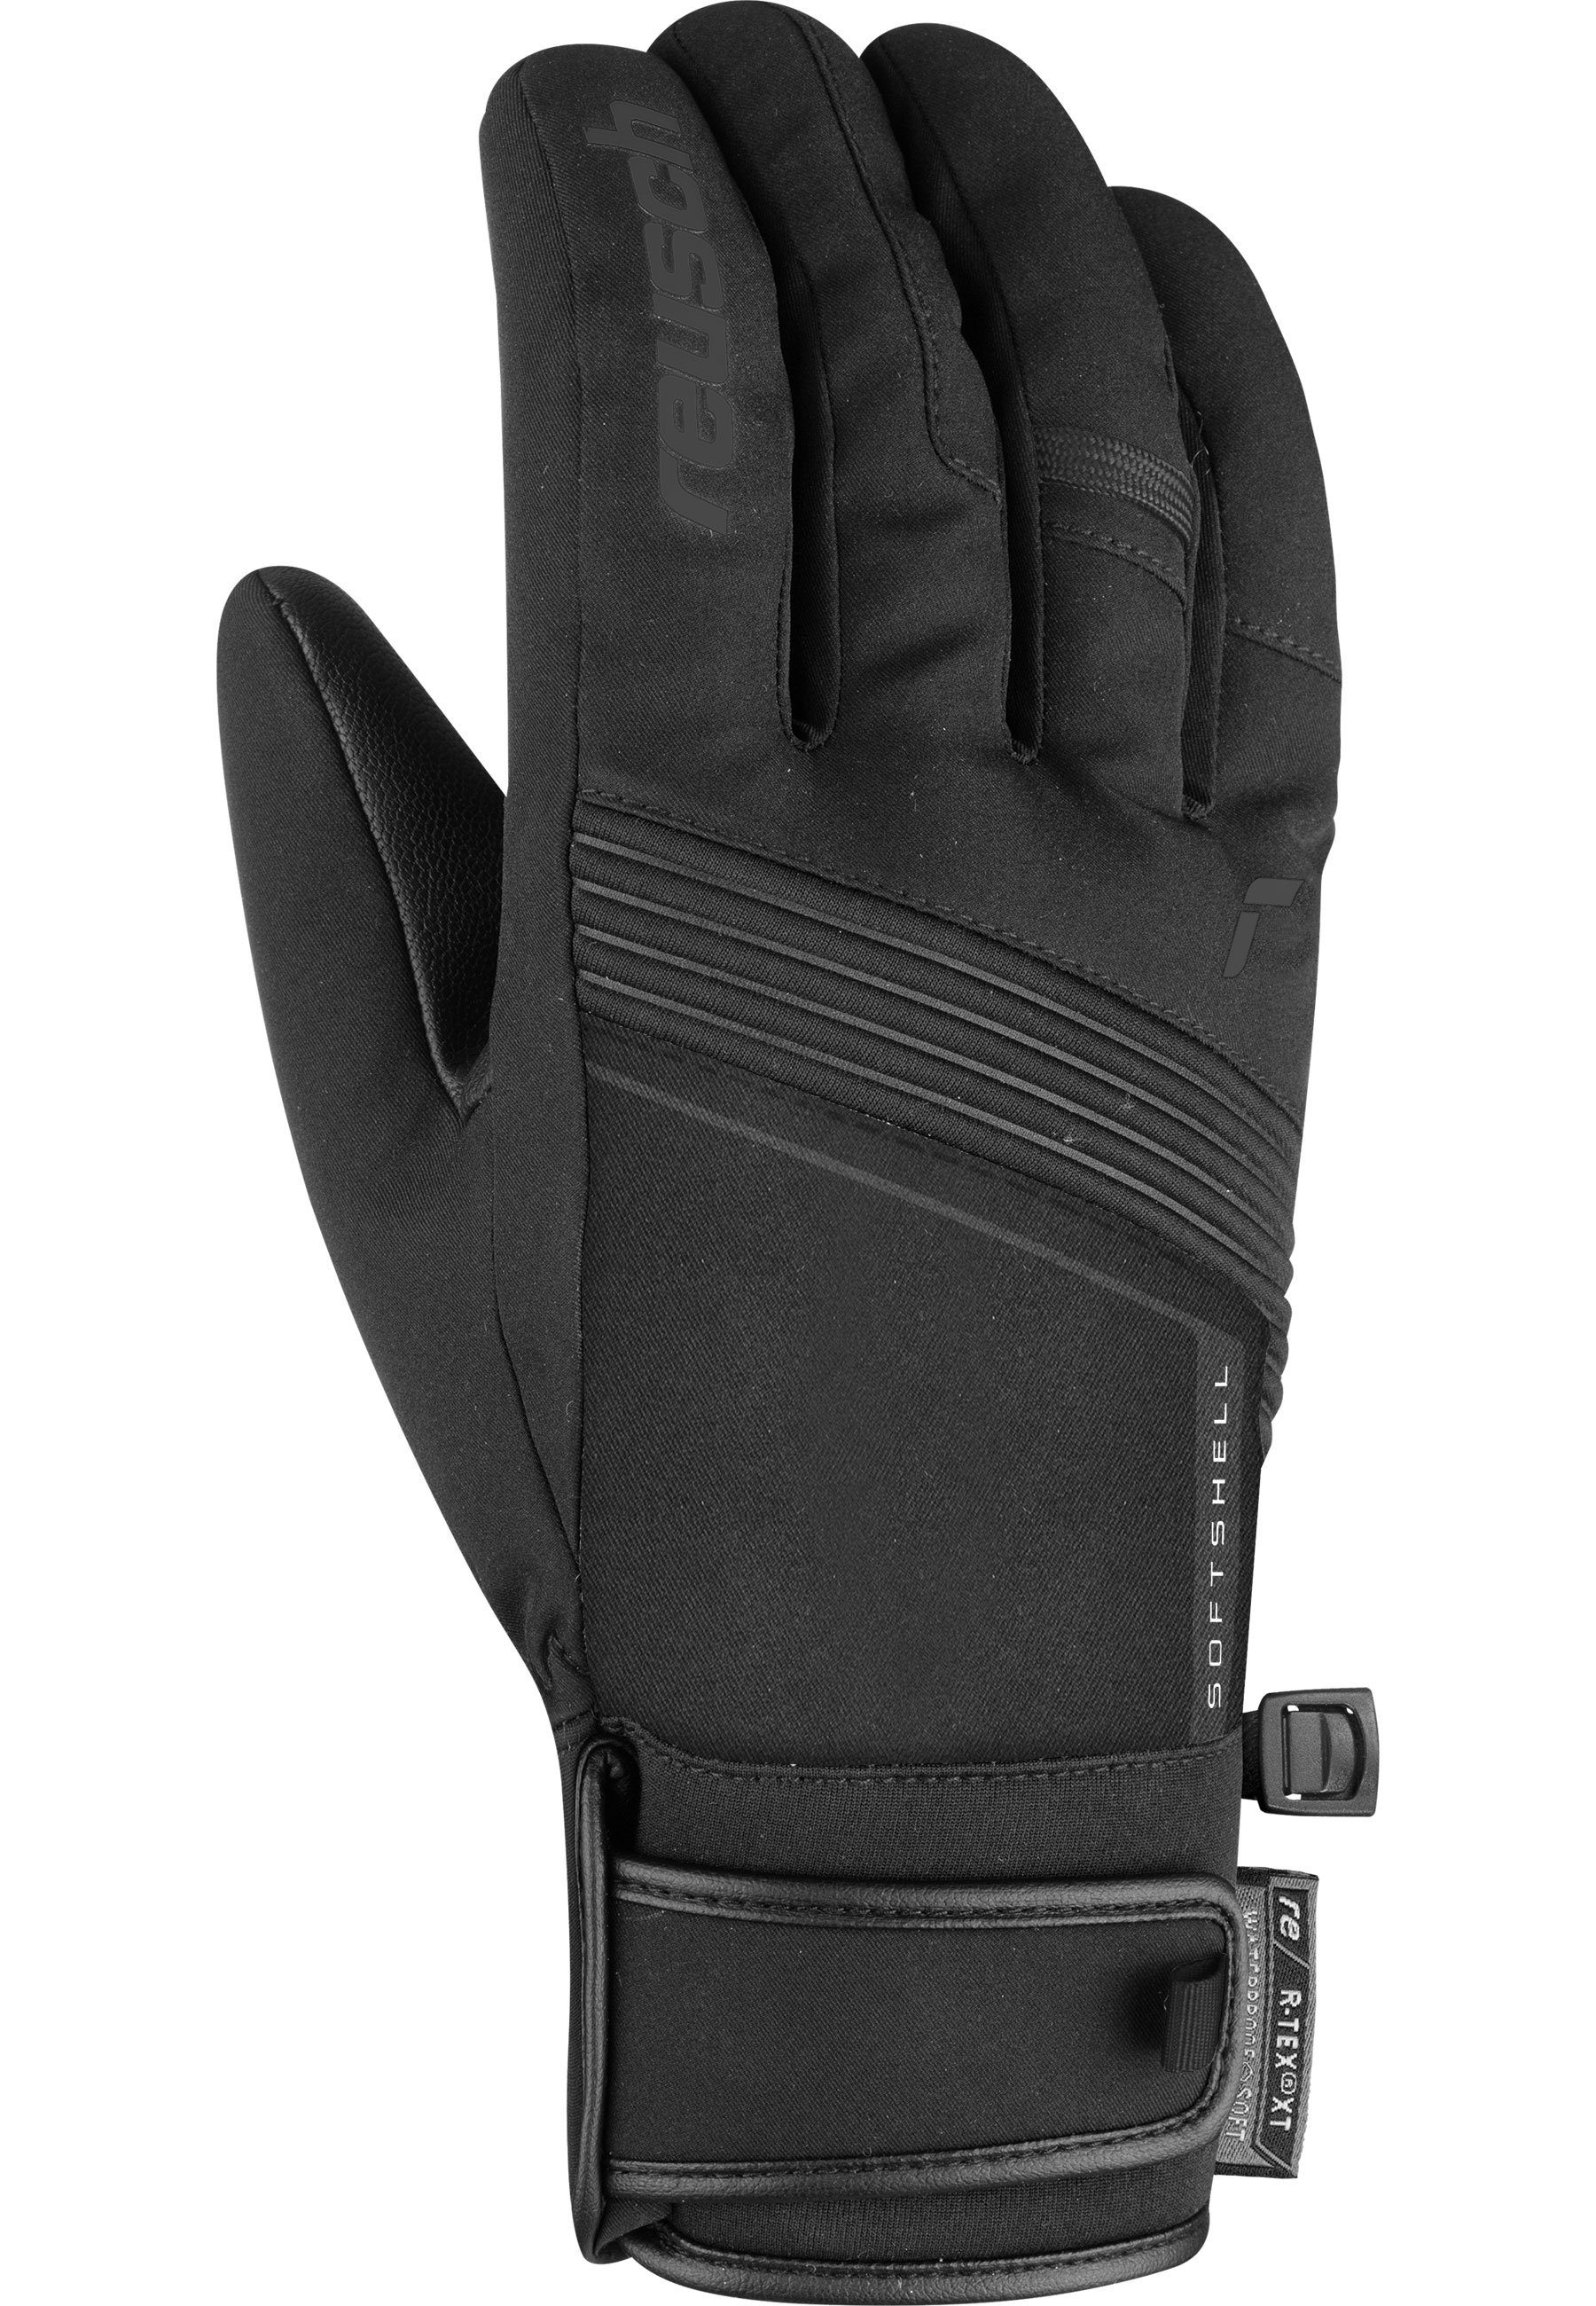 Luca Skihandschuhe schwarz Material R-TEX® aus hochwertigem Reusch XT